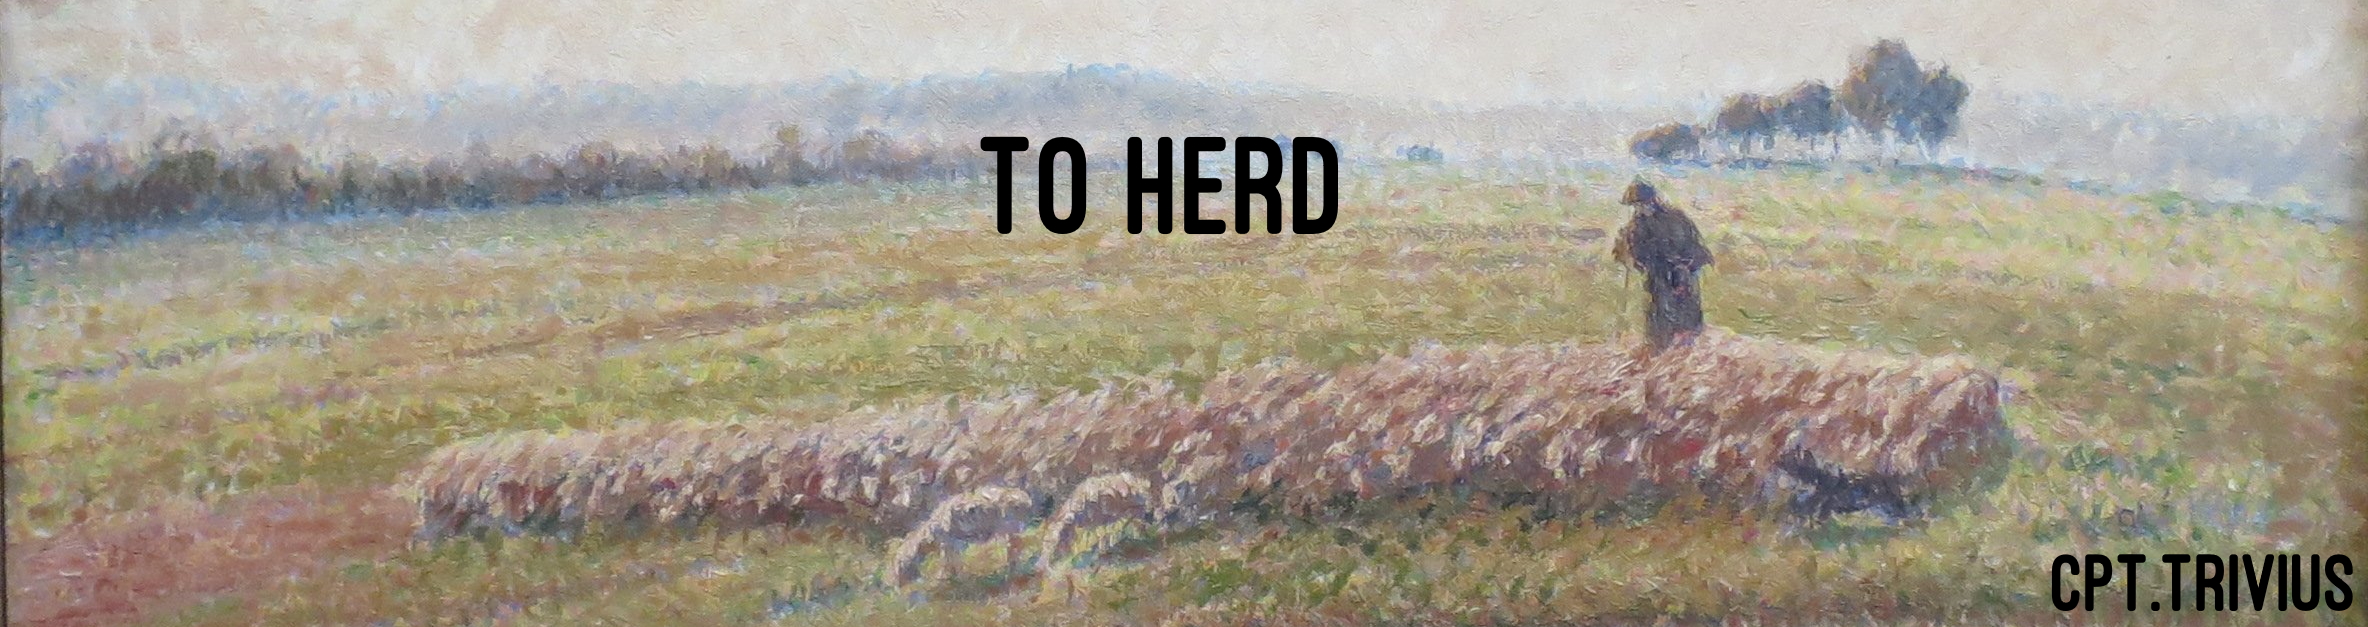 To Herd